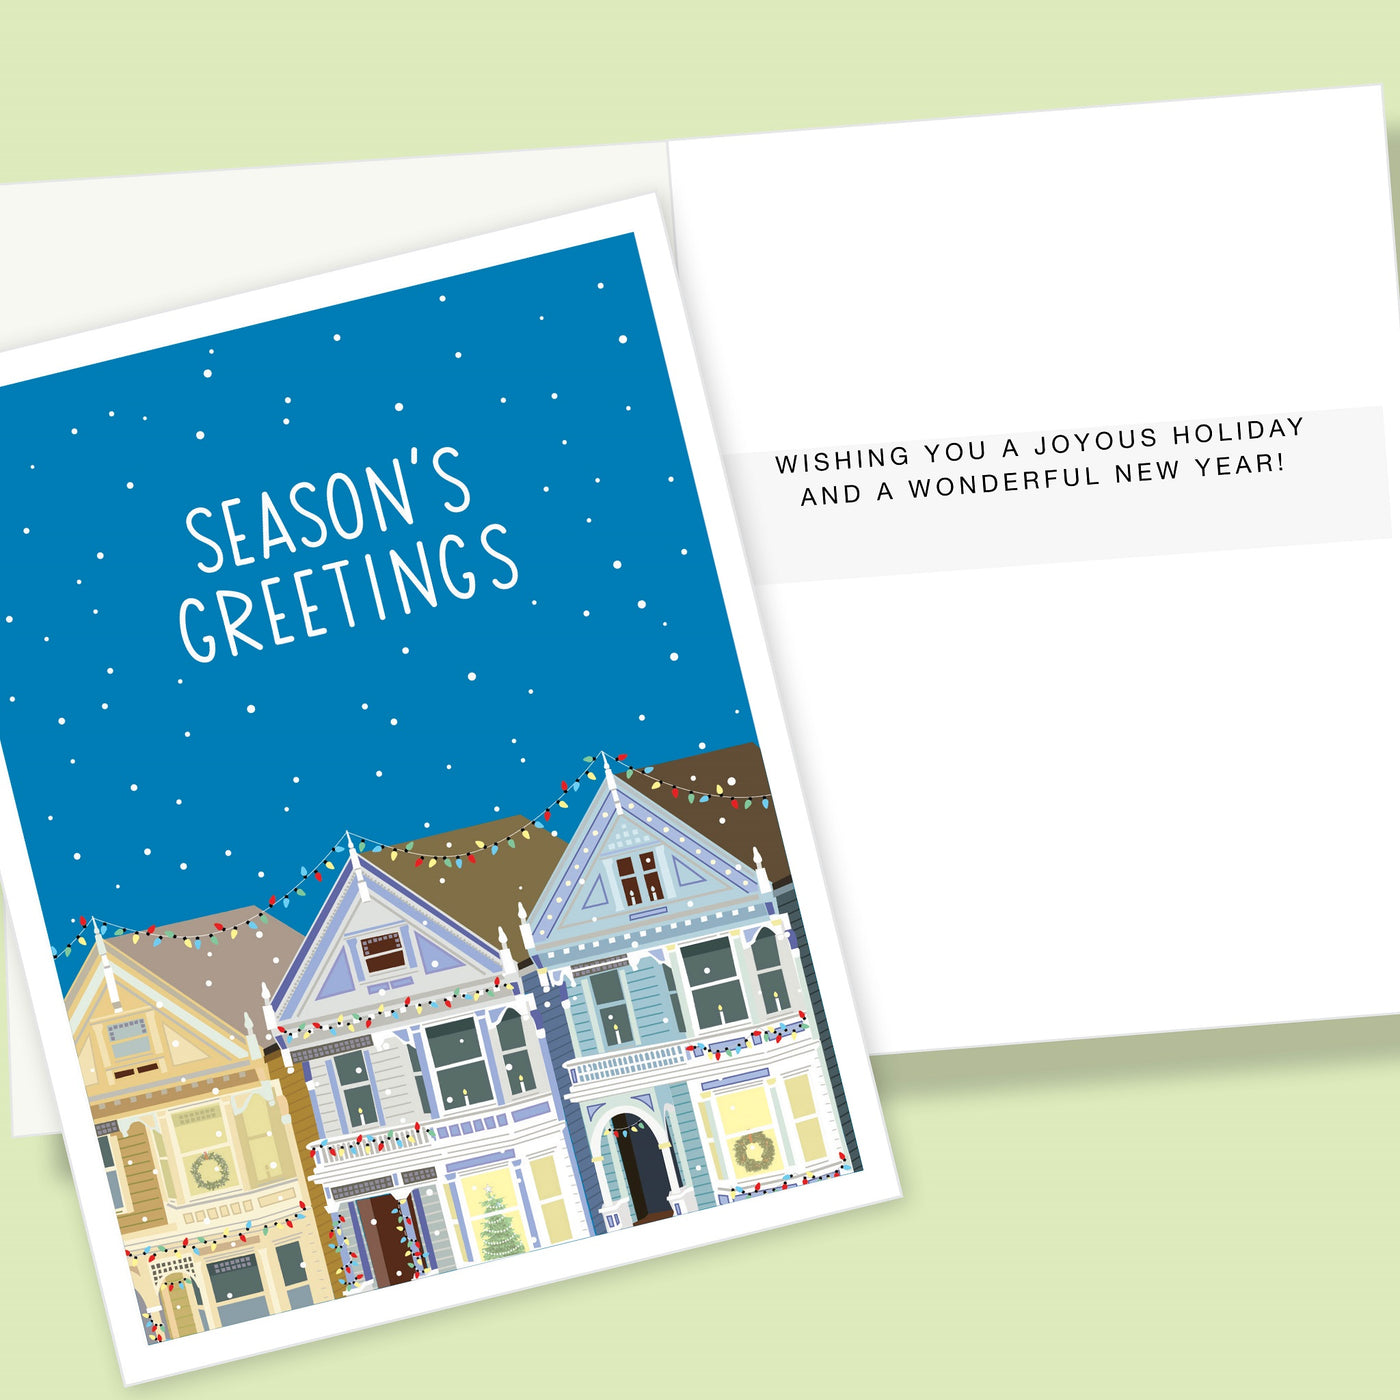 Season's Greeting's Holiday Homes Card